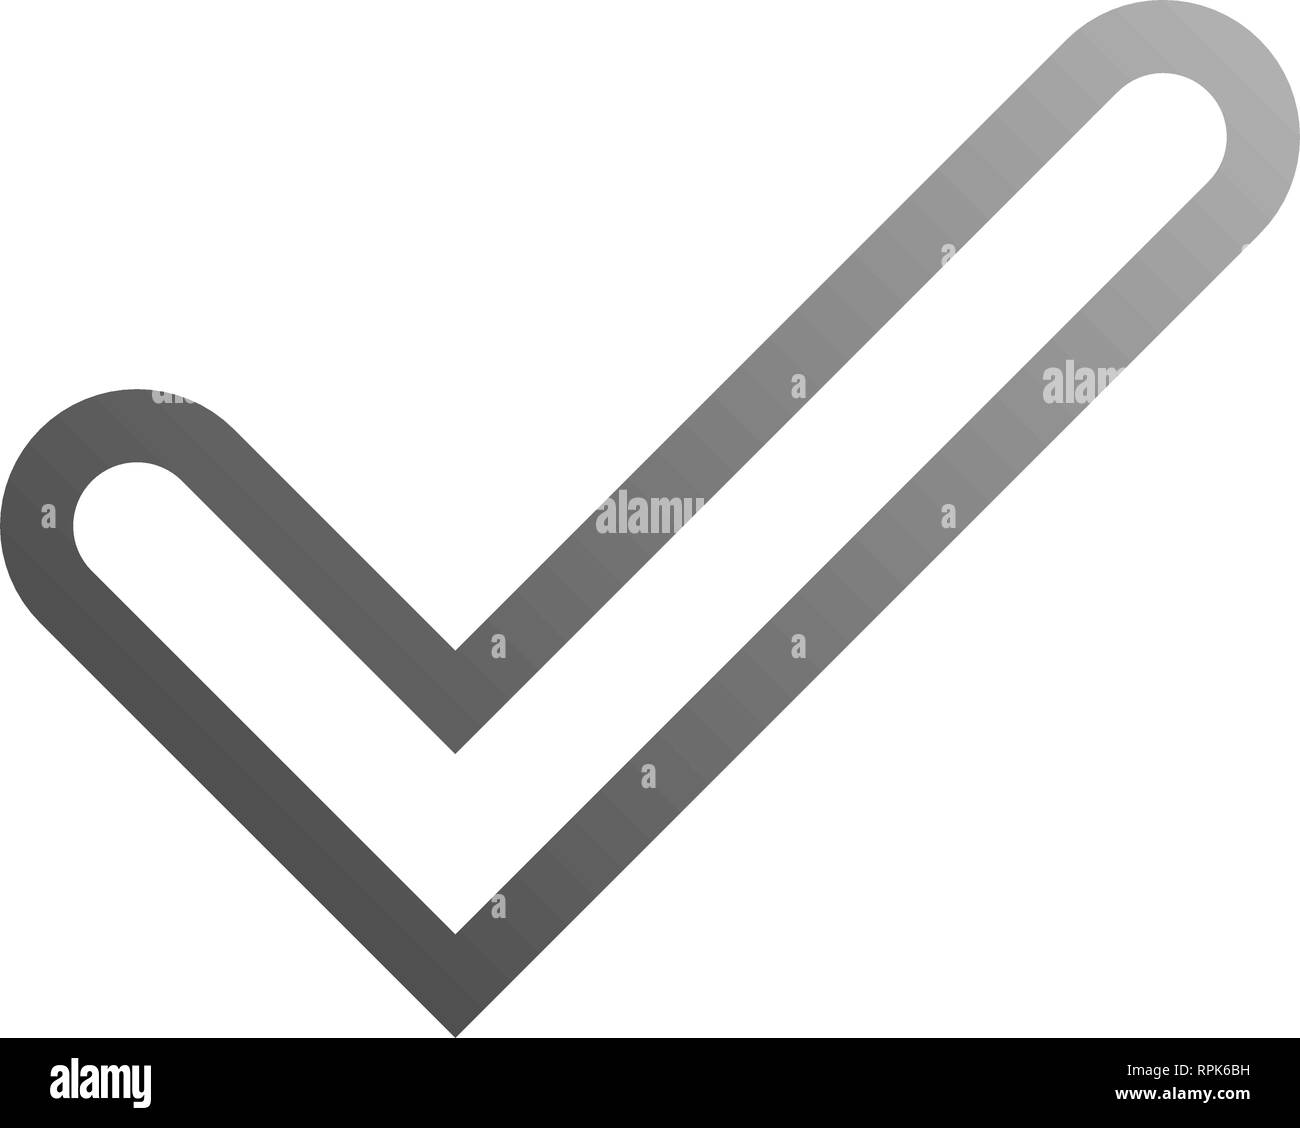 Häkchen-grauen Farbverlauf Umrisse Häkchensymbol-Vector Illustration Stock Vektor